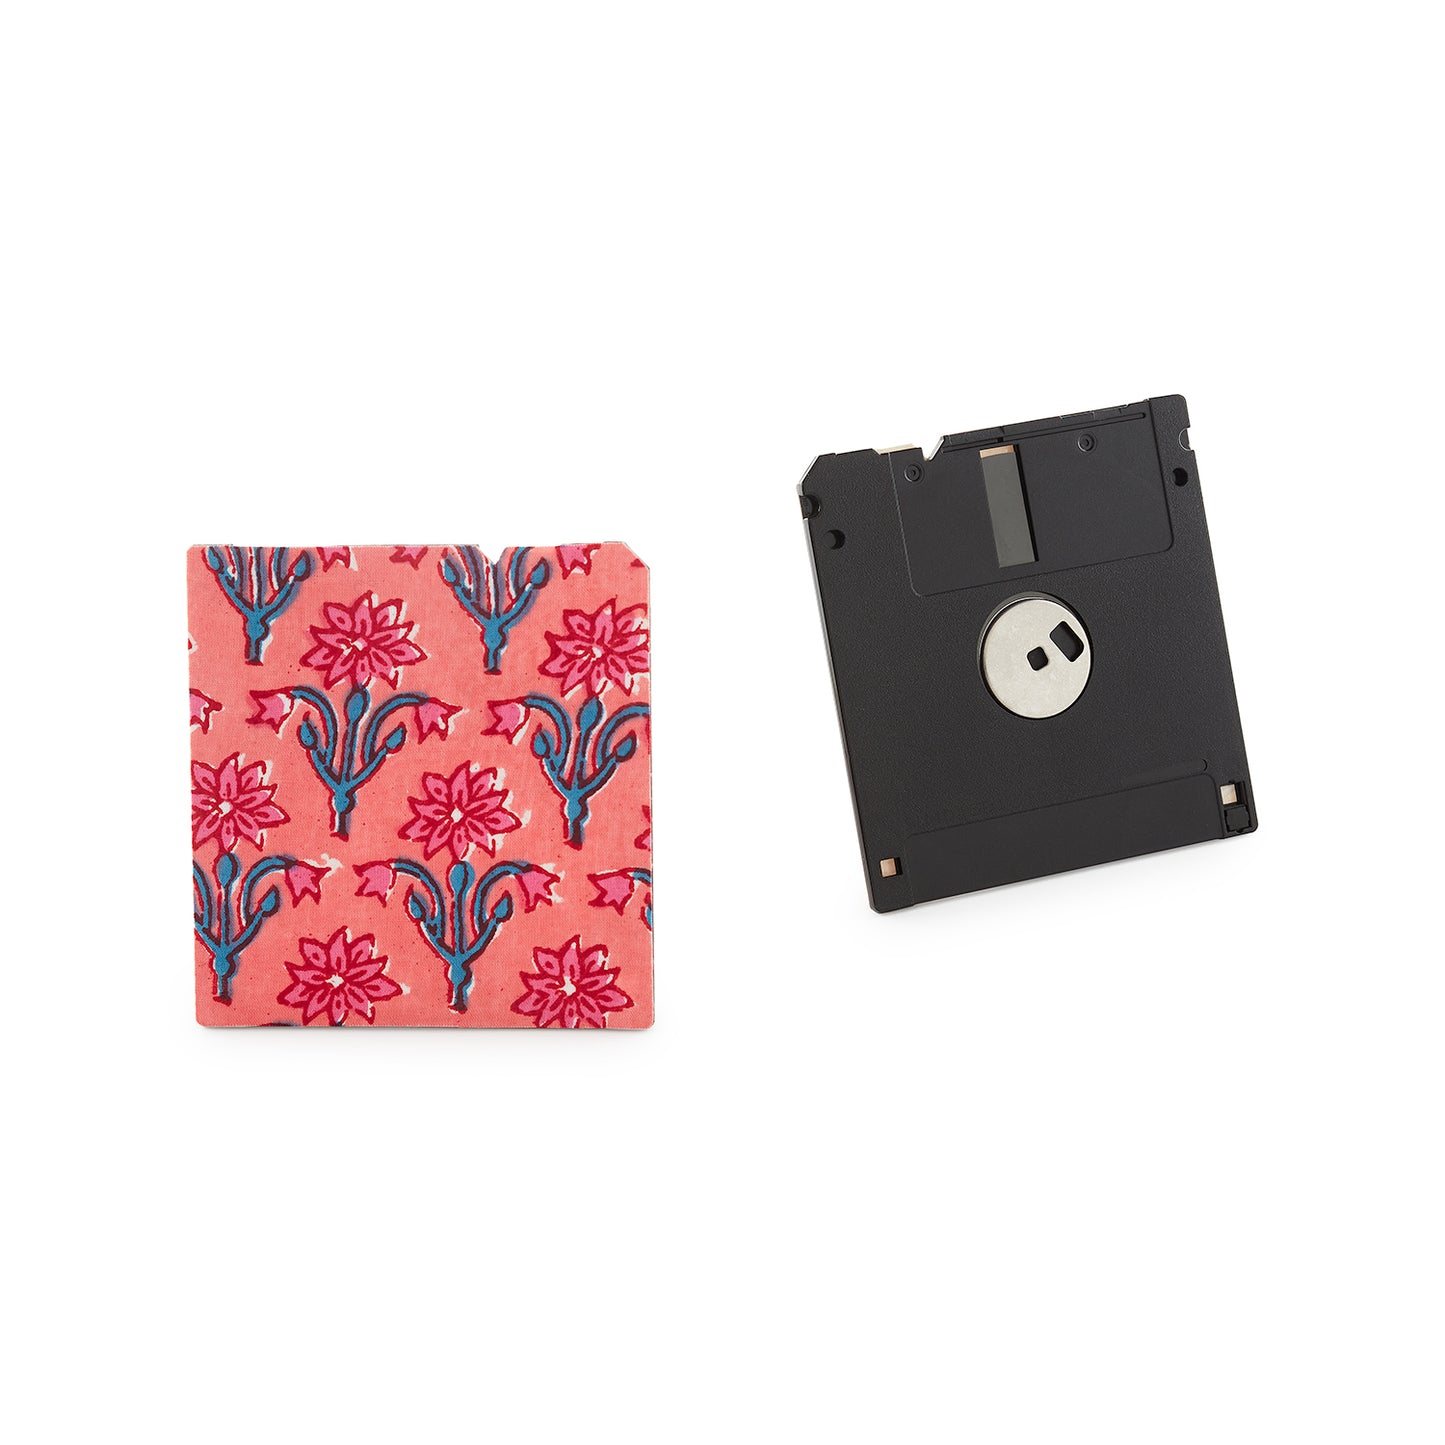 Coral Pink - Floppy Disk Caster Set of 2